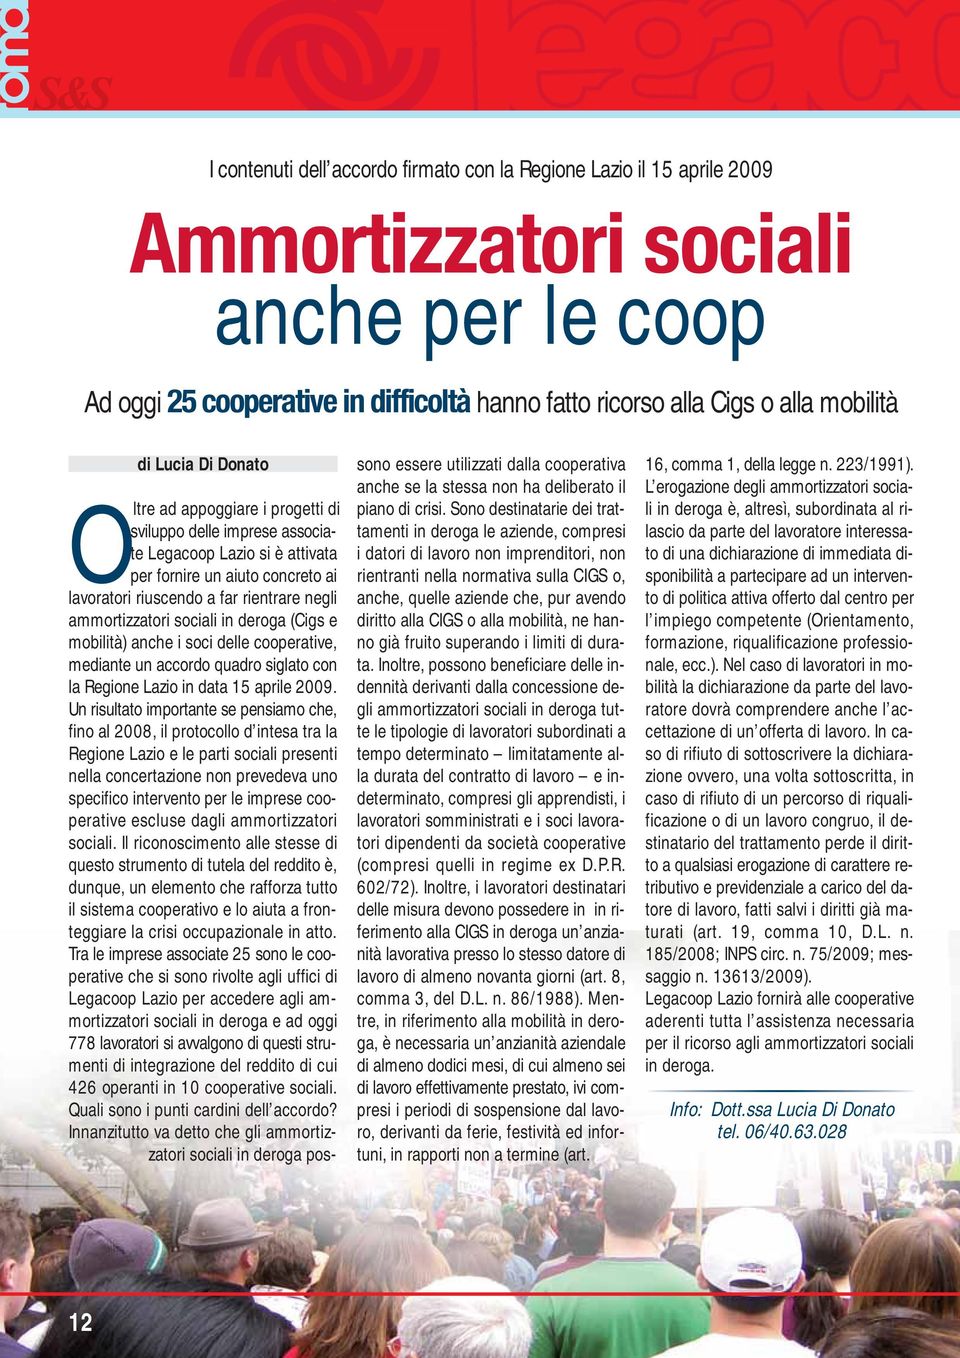 ammortizzatori sociali in deroga (Cigs e mobilità) anche i soci delle cooperative, mediante un accordo quadro siglato con la Regione Lazio in data 15 aprile 2009.